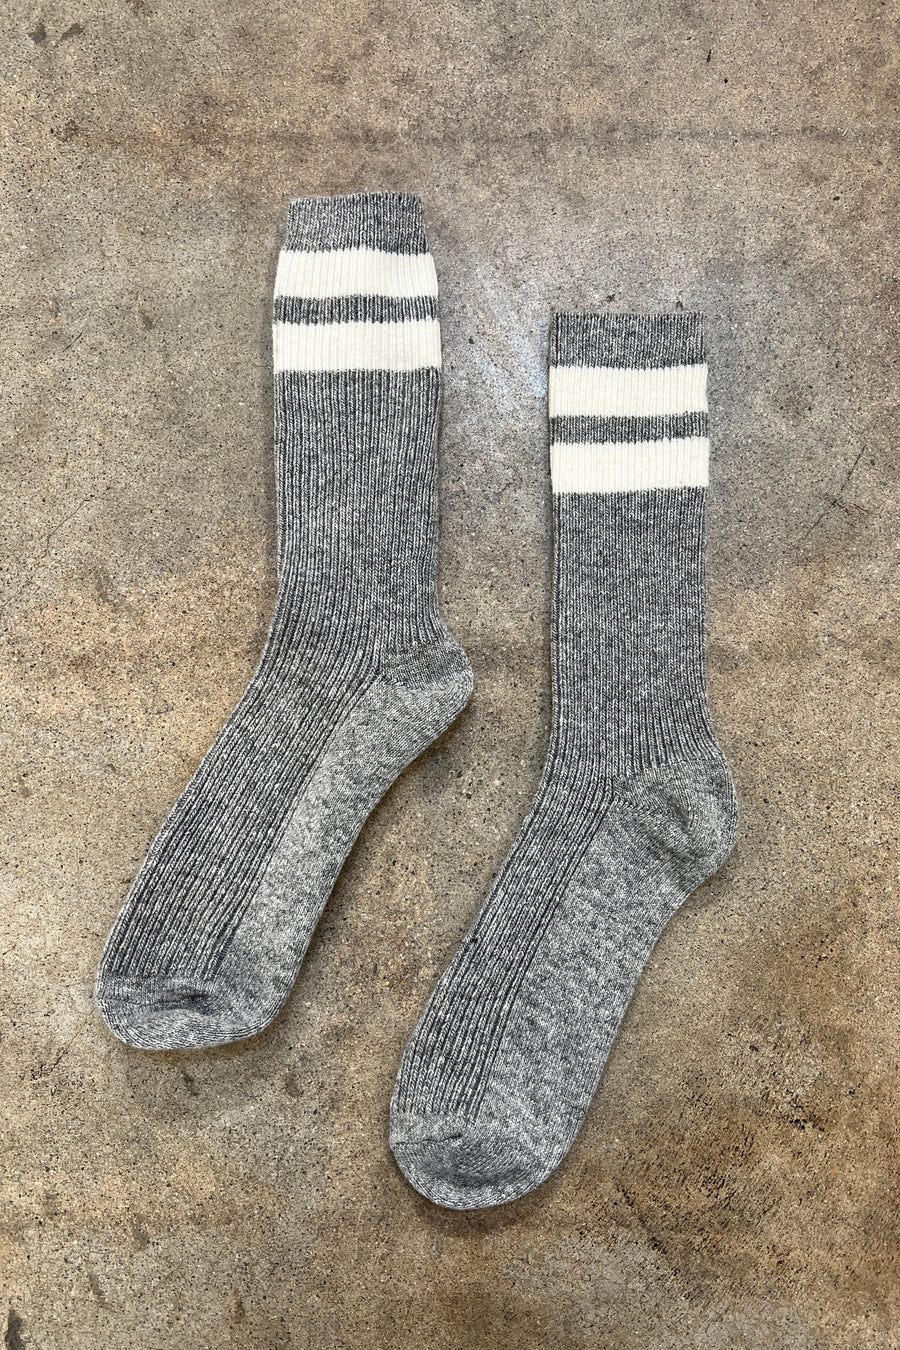 grandpa varsity socks